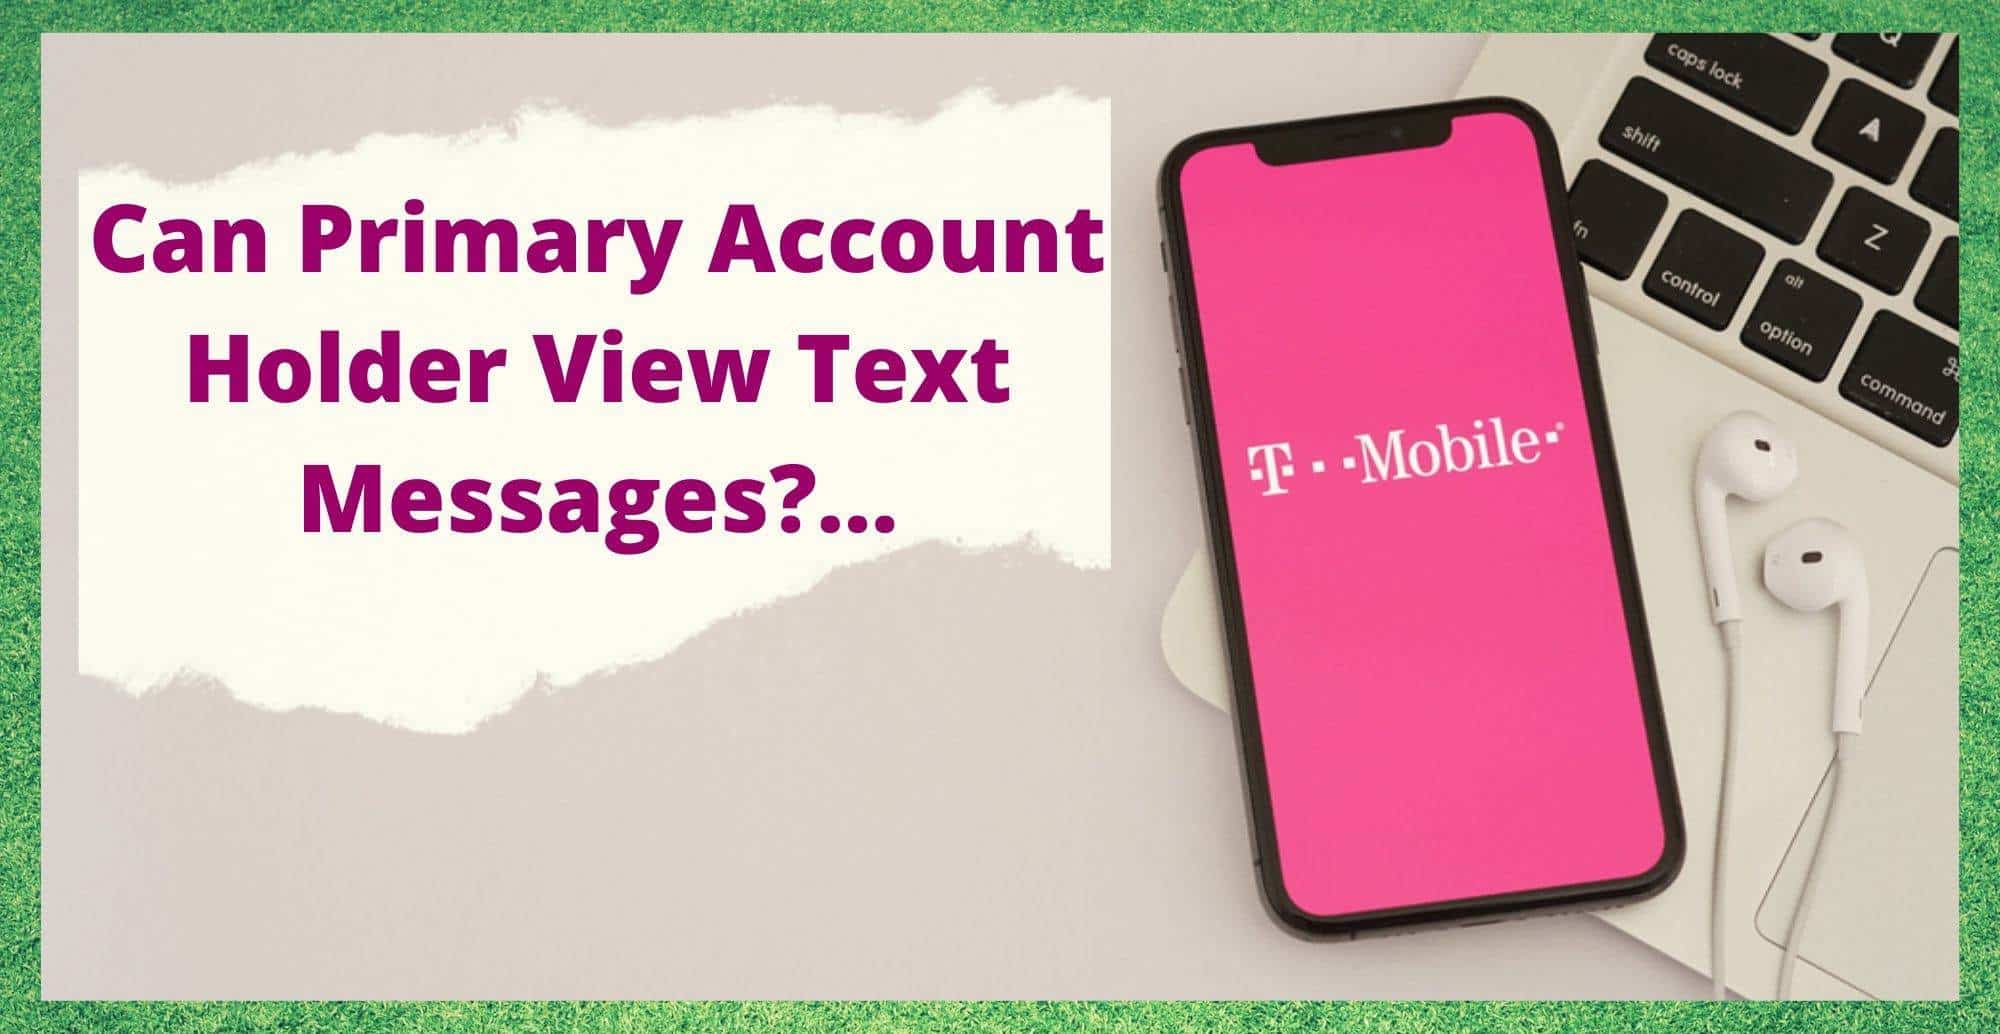 T-Mobile: प्राथमिक खाता धारकले पाठ सन्देशहरू हेर्न सक्छ?